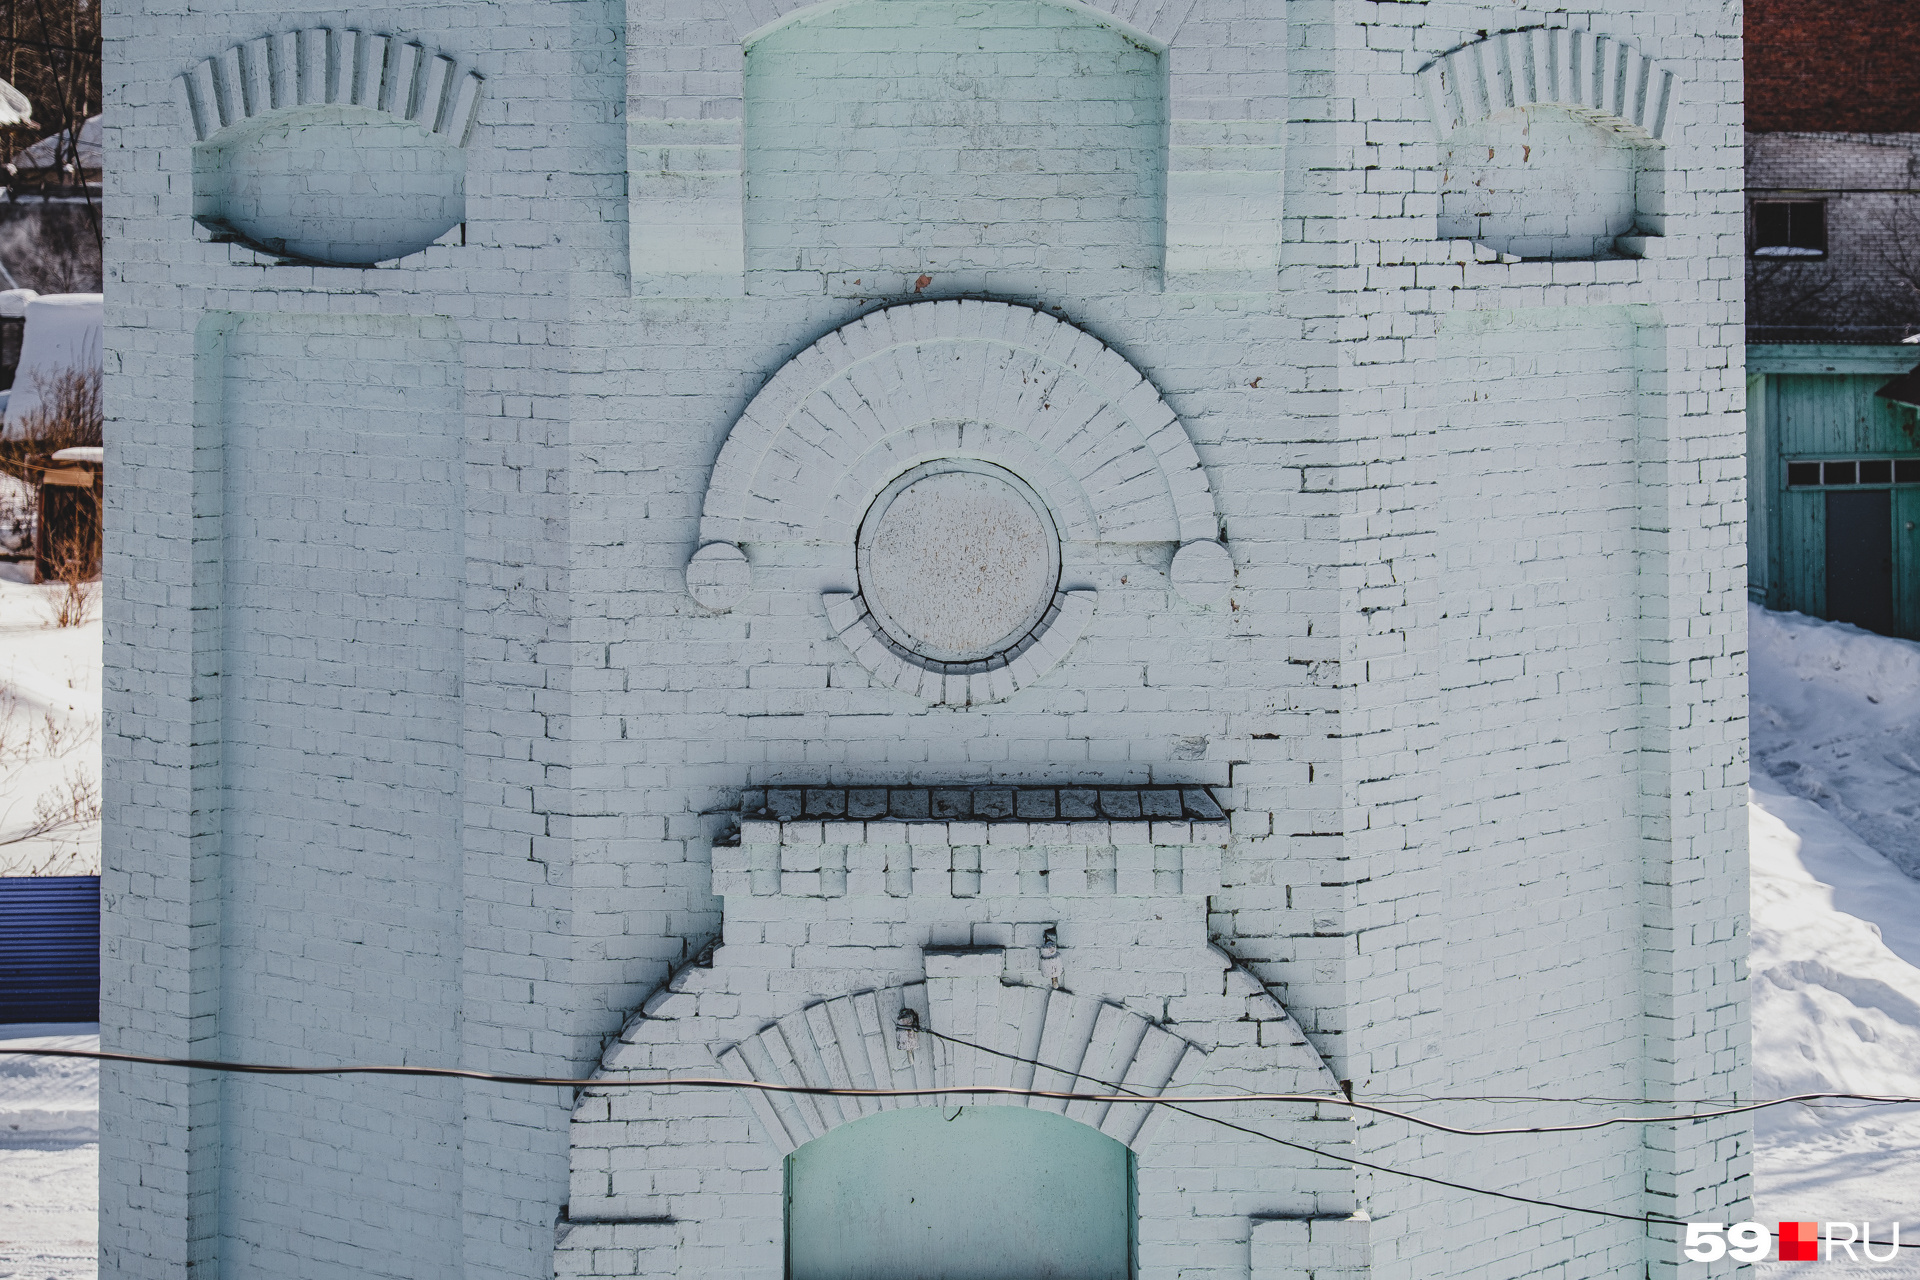 Характерные арочки, зубчики и круглые элементы есть и на этой башне. Выше мы видели похожие детали на фасаде башни на Барамзиной